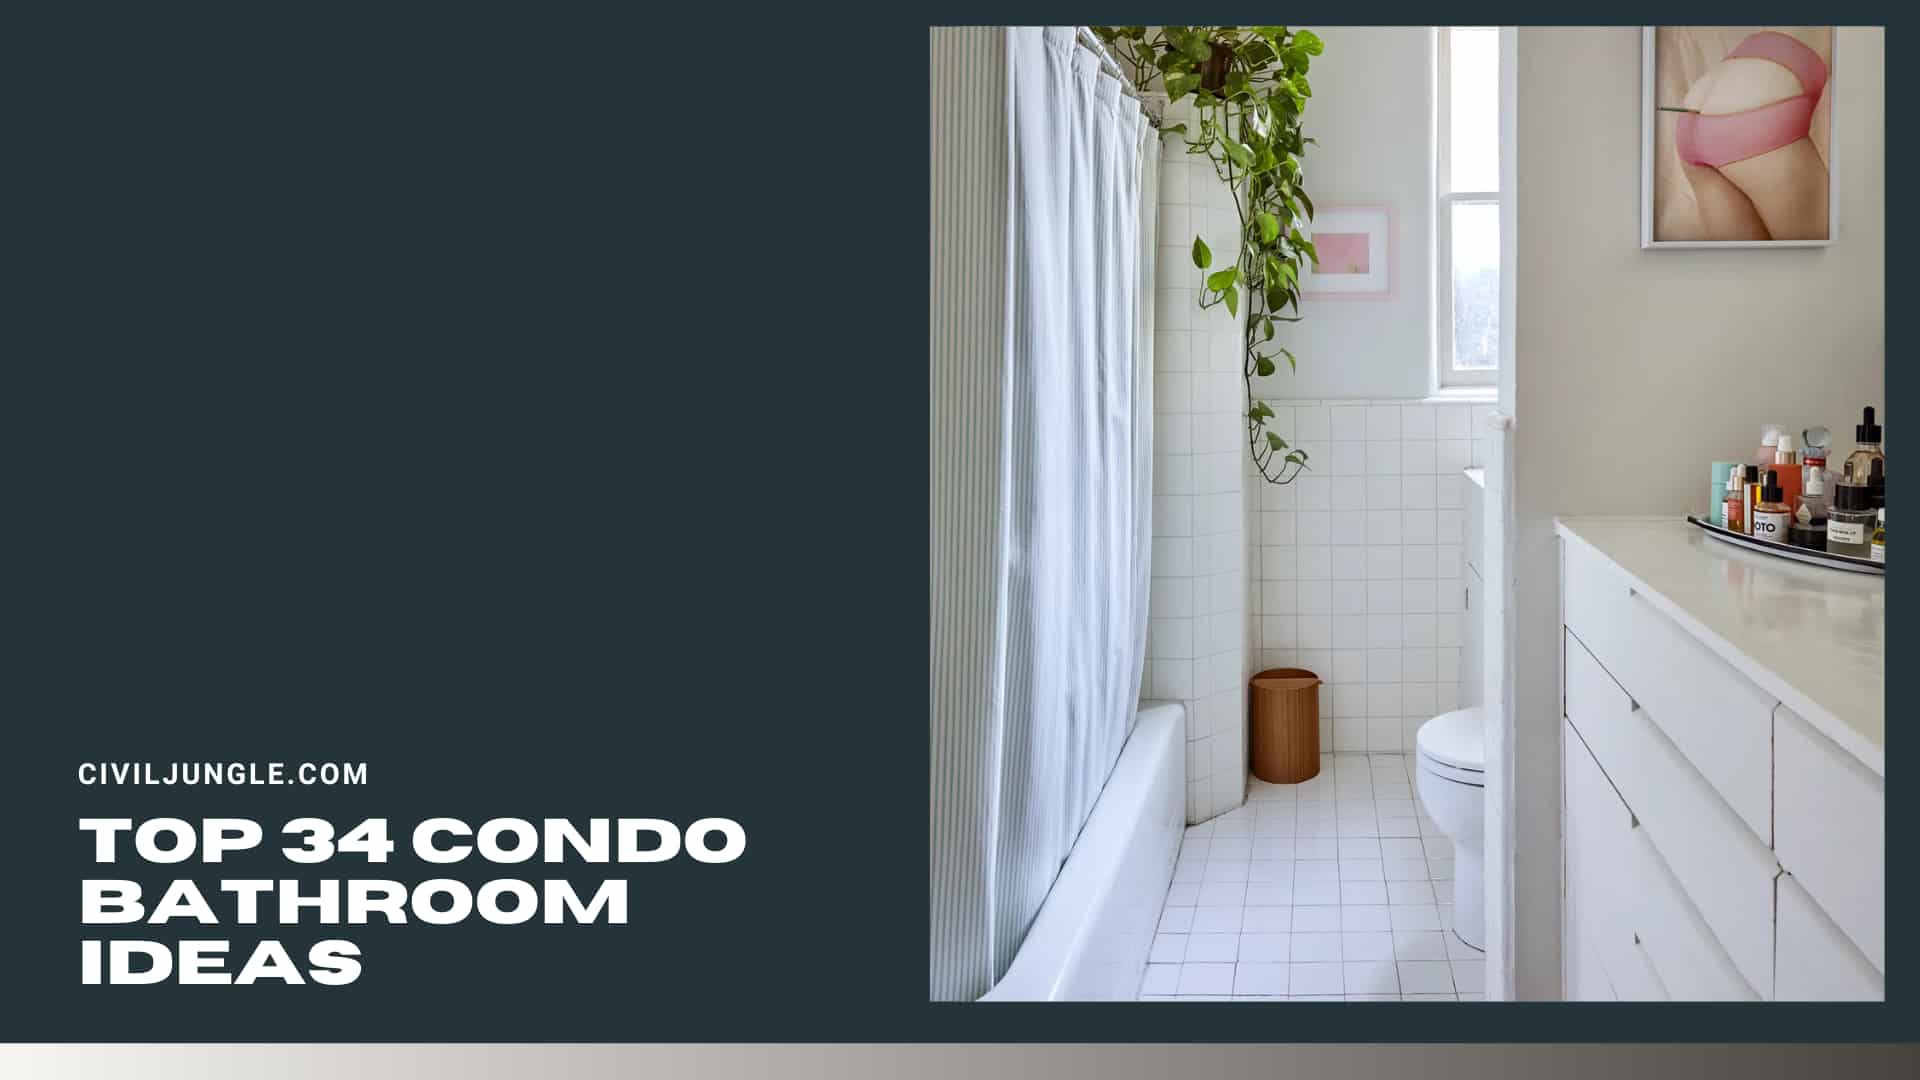 Top 34 Condo Bathroom Ideas